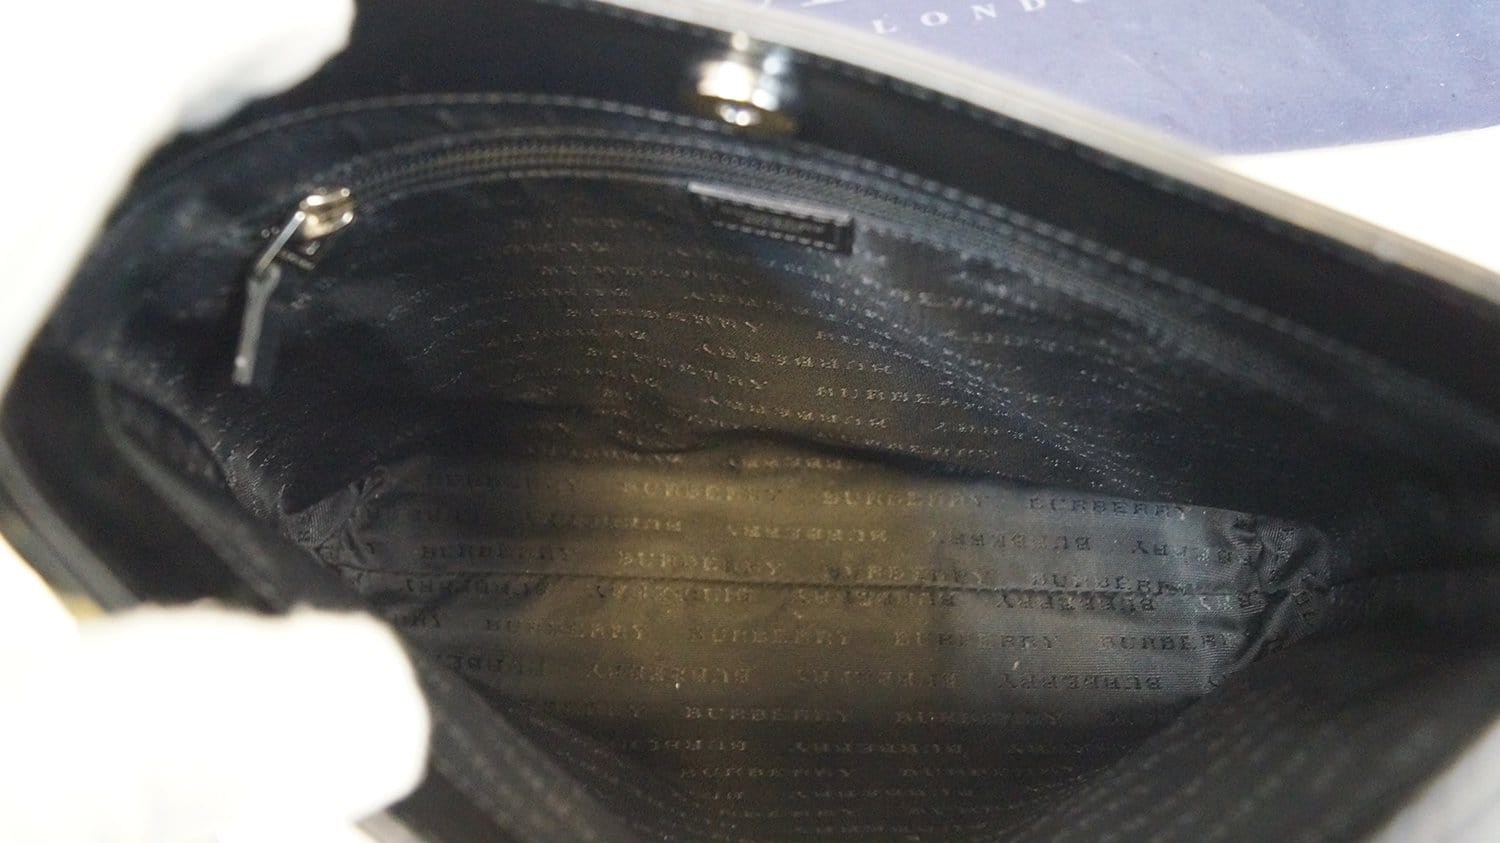 Burberry Nova Check Handbag – DAC